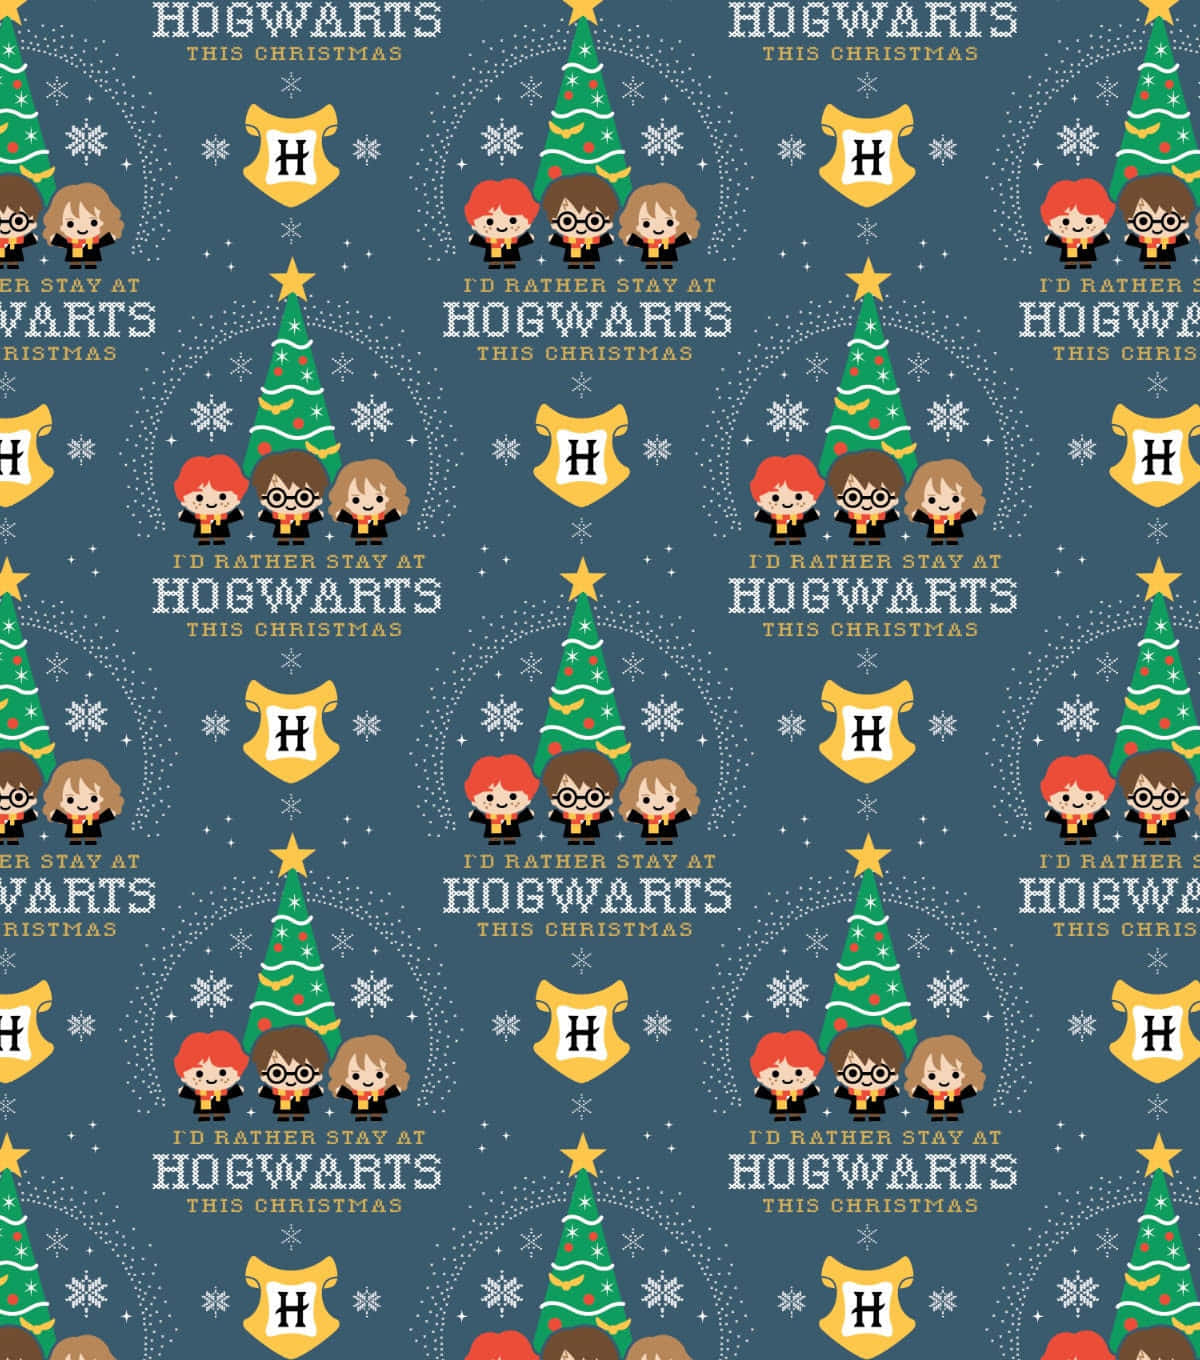 Hogwarts Among The Trees At Christmas Wallpaper